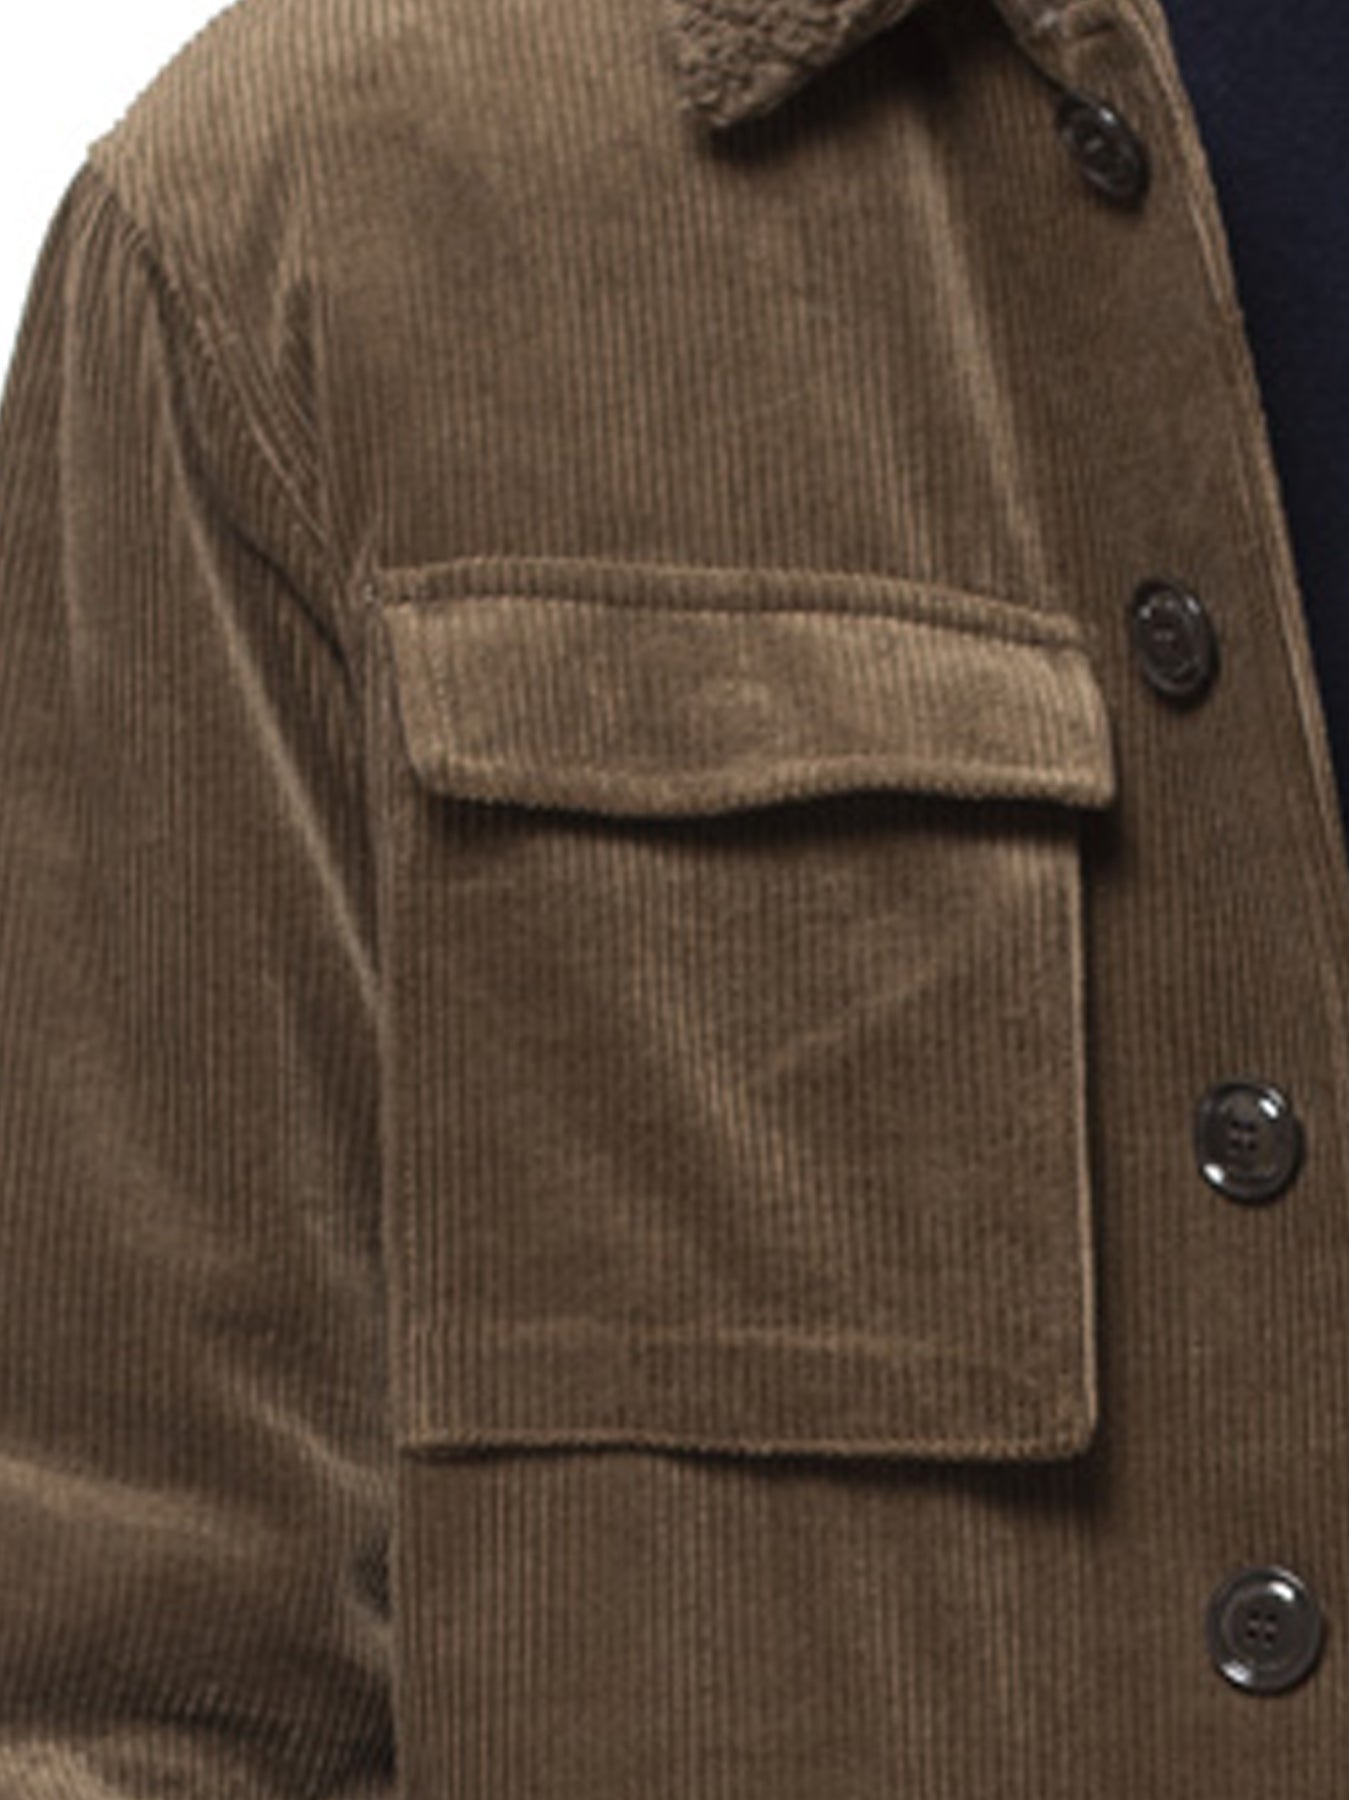 Men's military velvet jacket